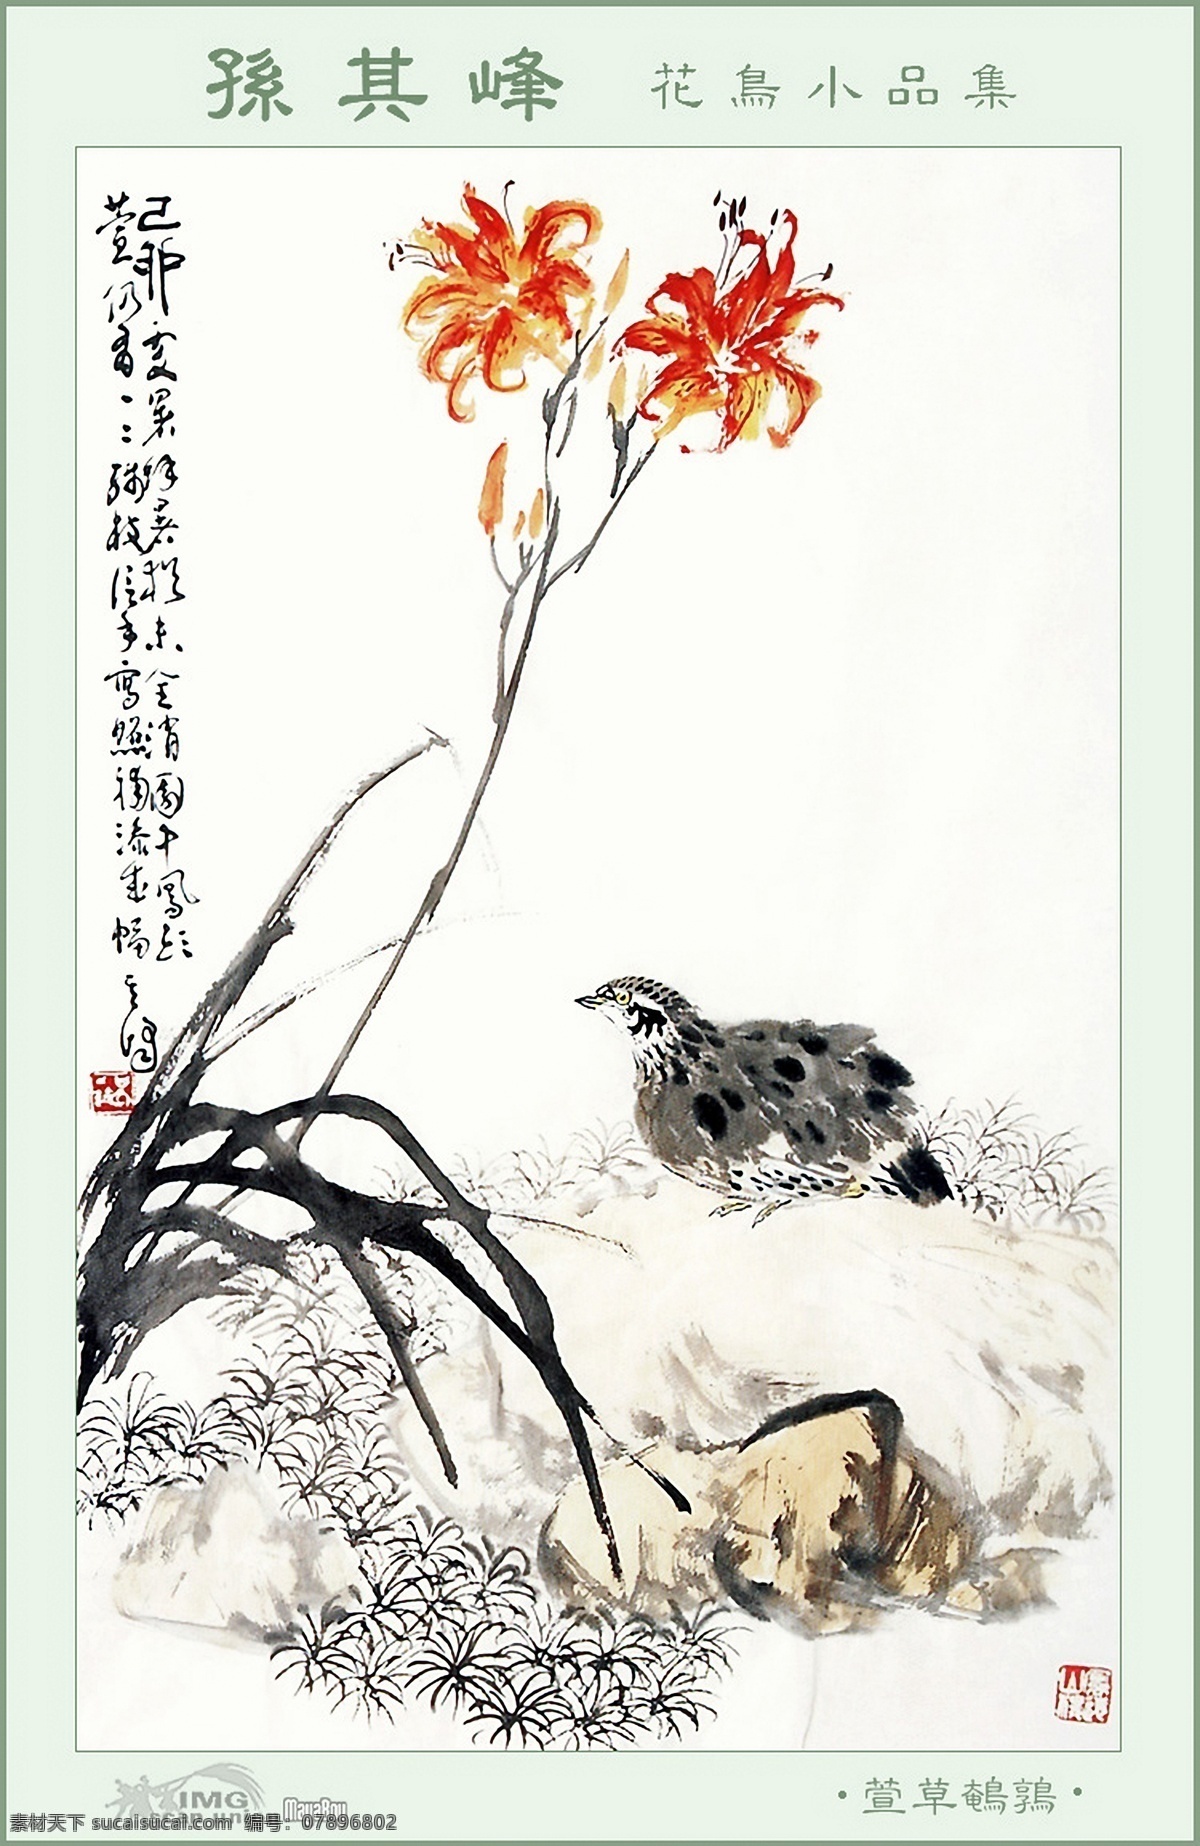 孙 峰 花鸟 作品 白百合 水墨花卉 中国画 立轴 写意画法 工艺美术 平面广告 装饰设计 白色